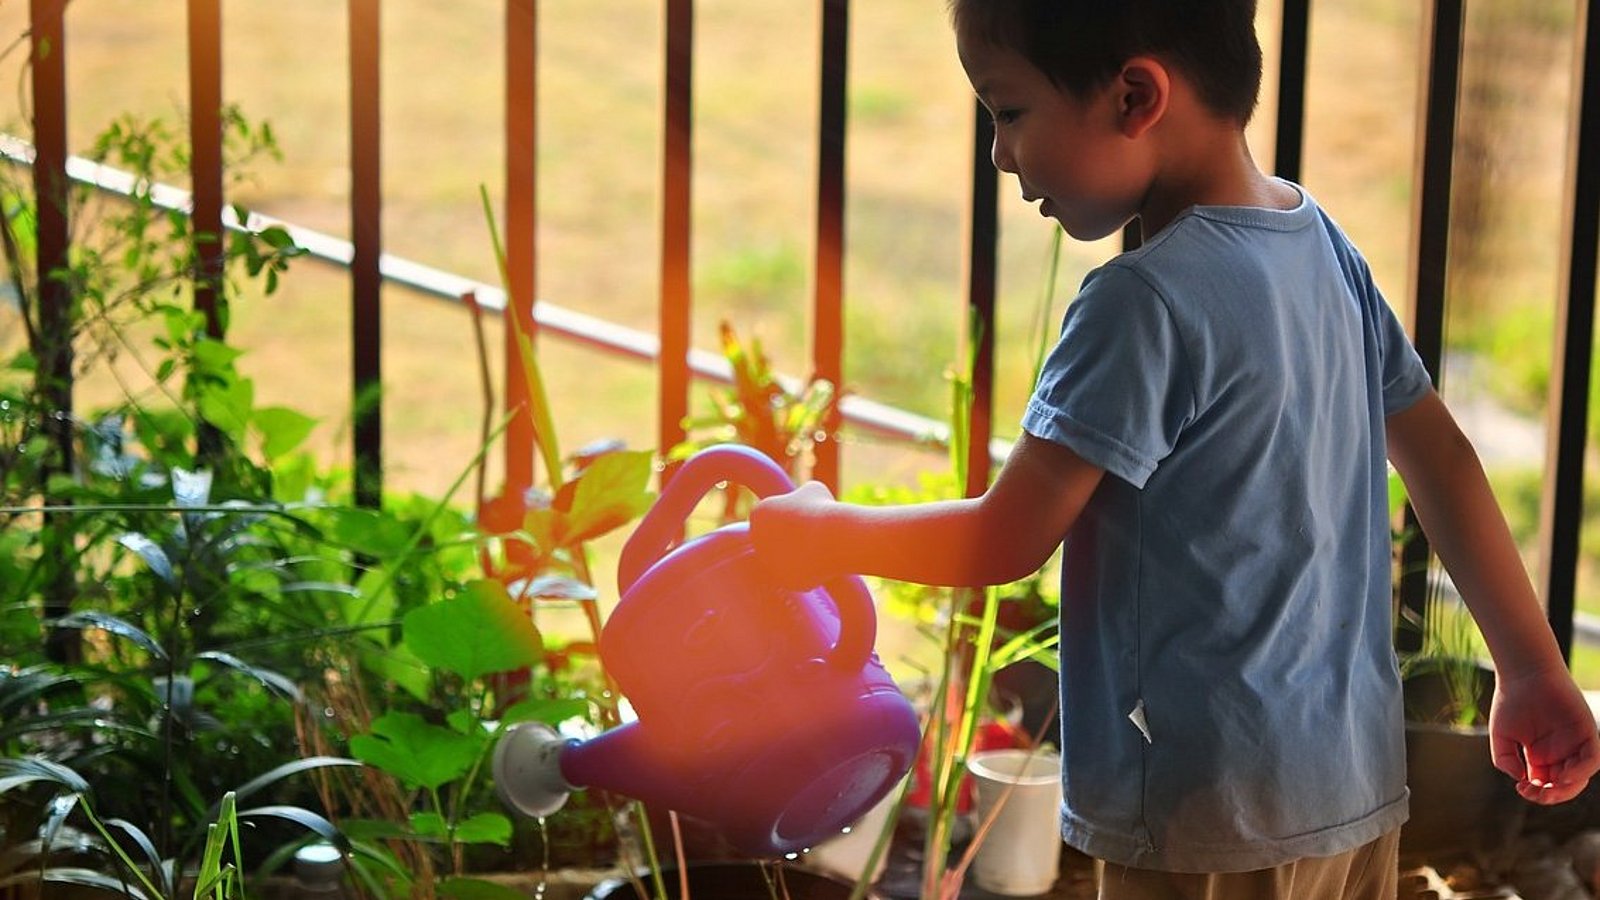 Ein kleiner Junge gießt mit einer orangefarbenen Plastikgießkanne Pflanzen, die in großen Töpfen gepflanzt sind. 